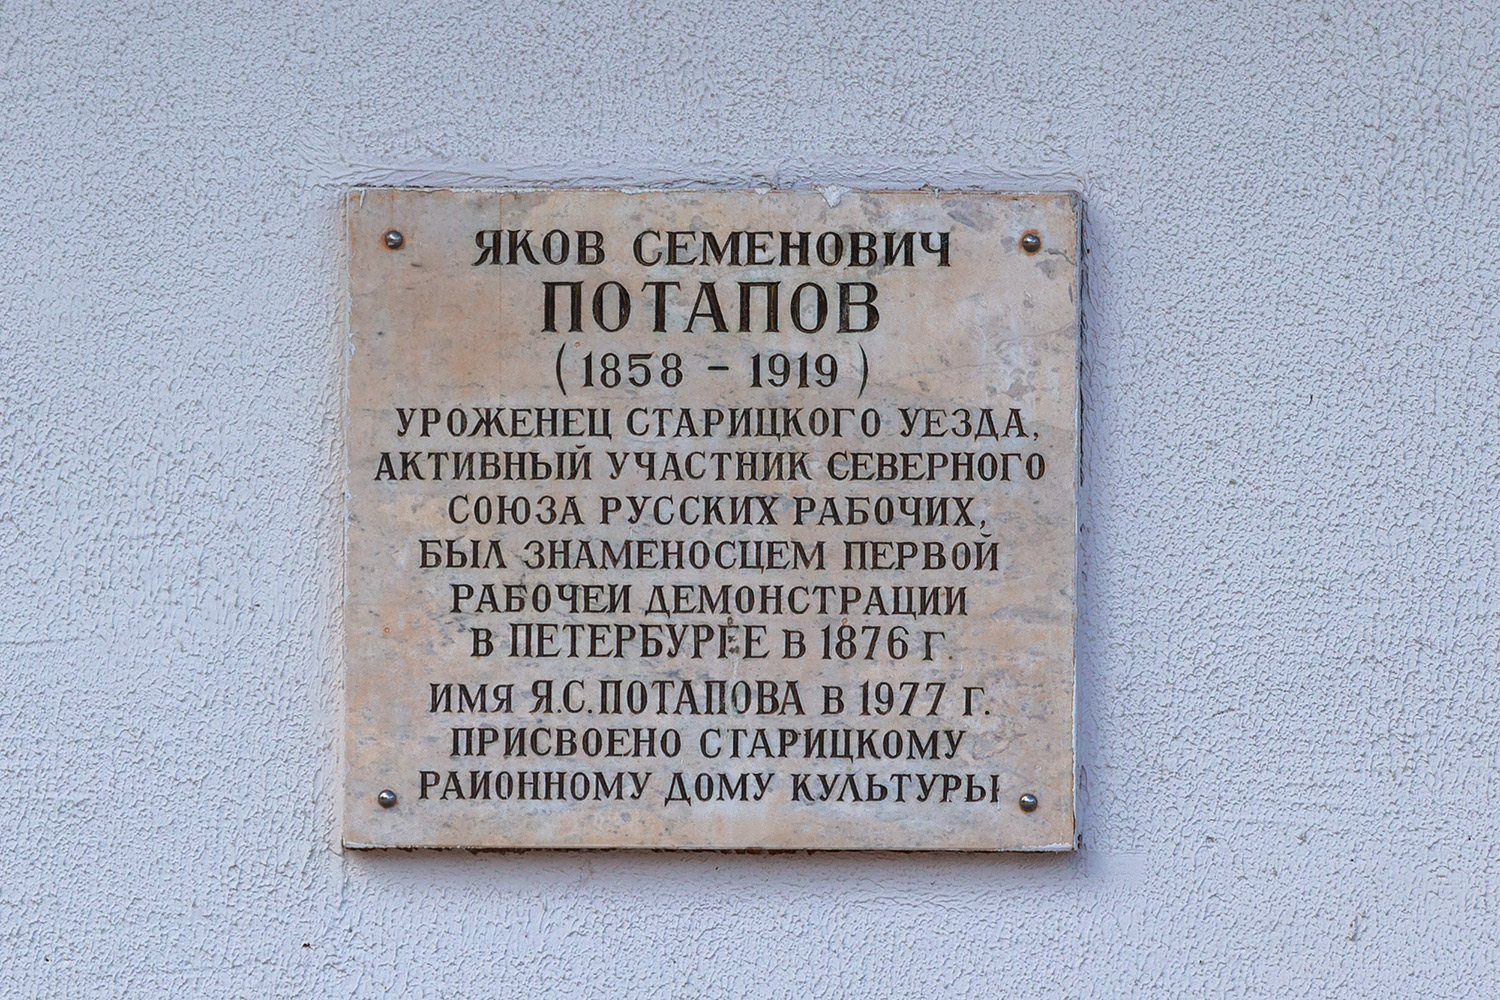 Старица, Улица Володарского, 4. Memorial plaques